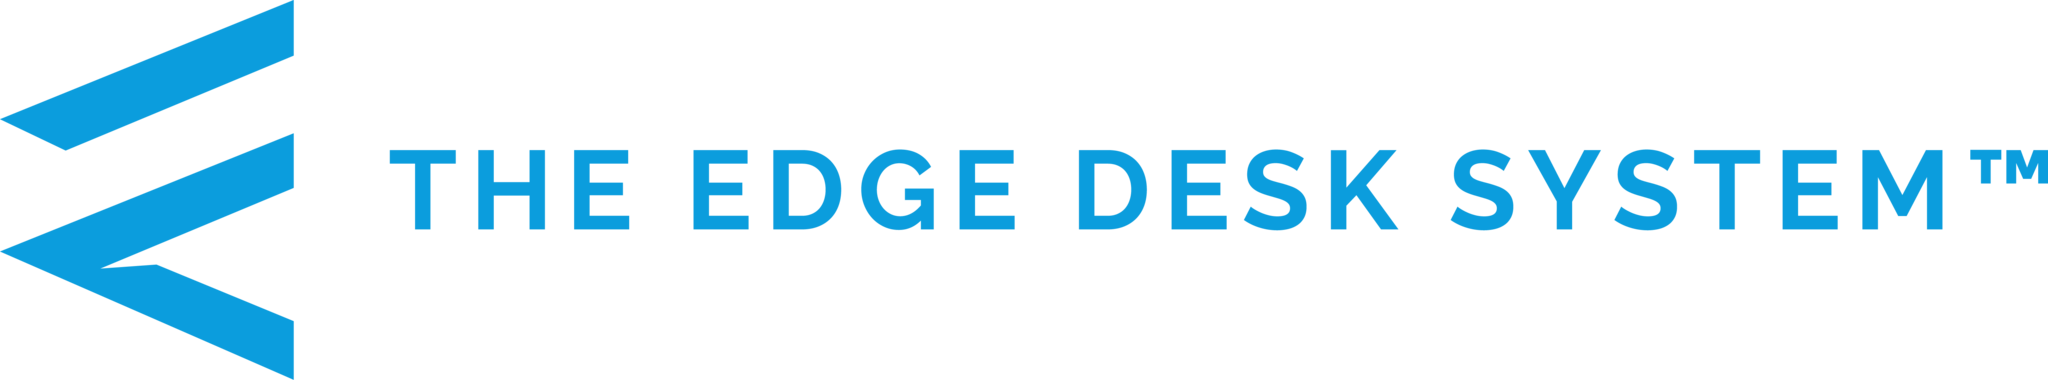 Desk Logo - The Edge Desk